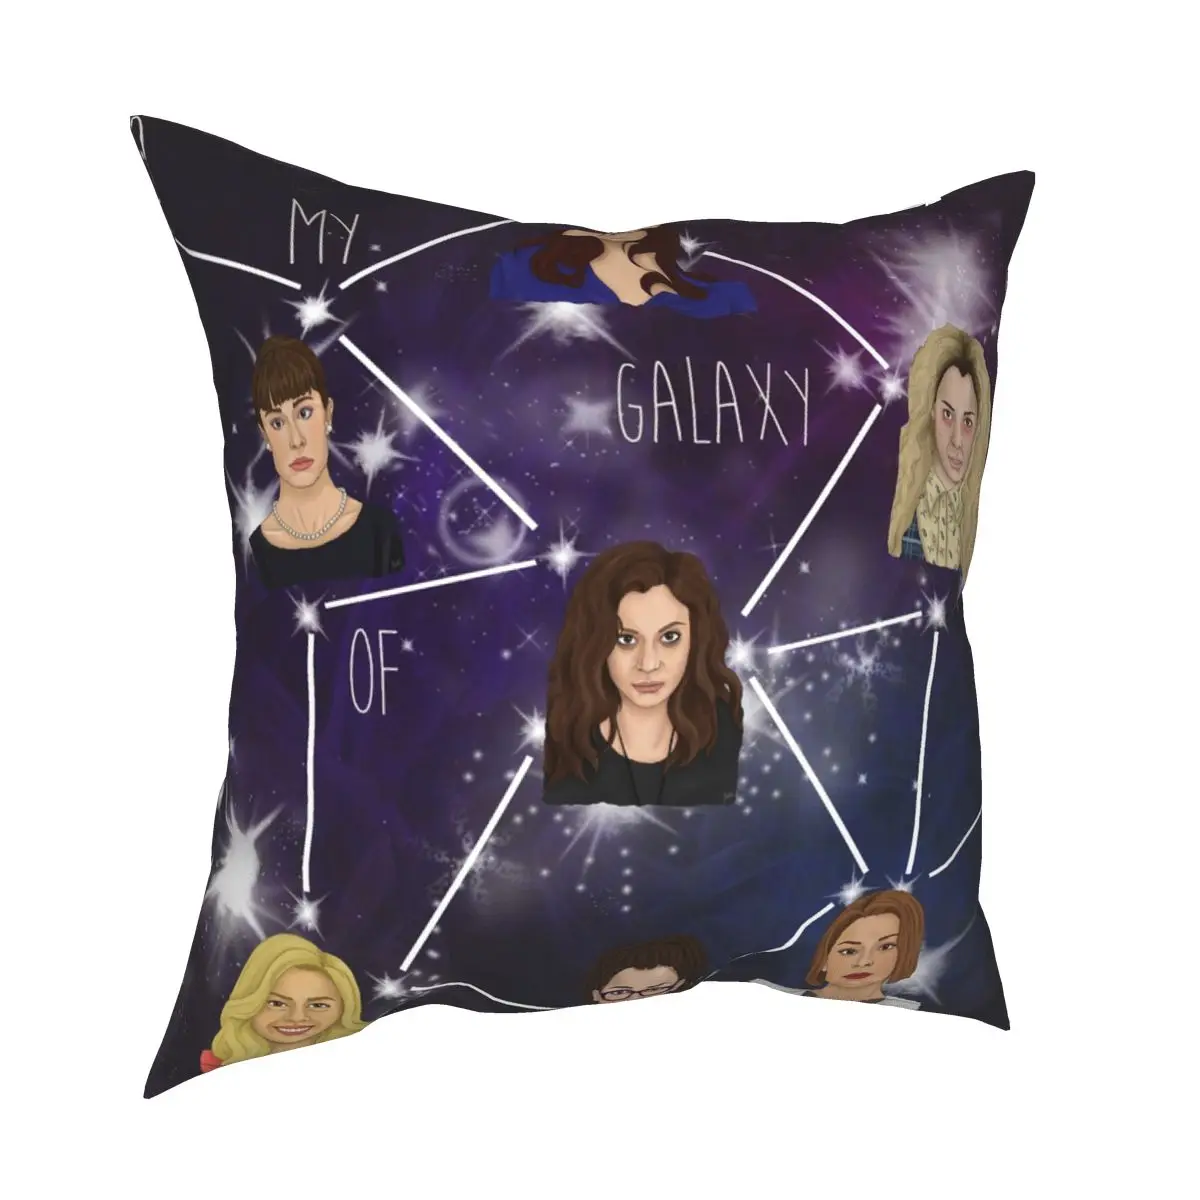 

Galaxy Of Women Throw Pillow Cover Cushions for Sofa Orphan Black Clone Club Custom Cushion Covers